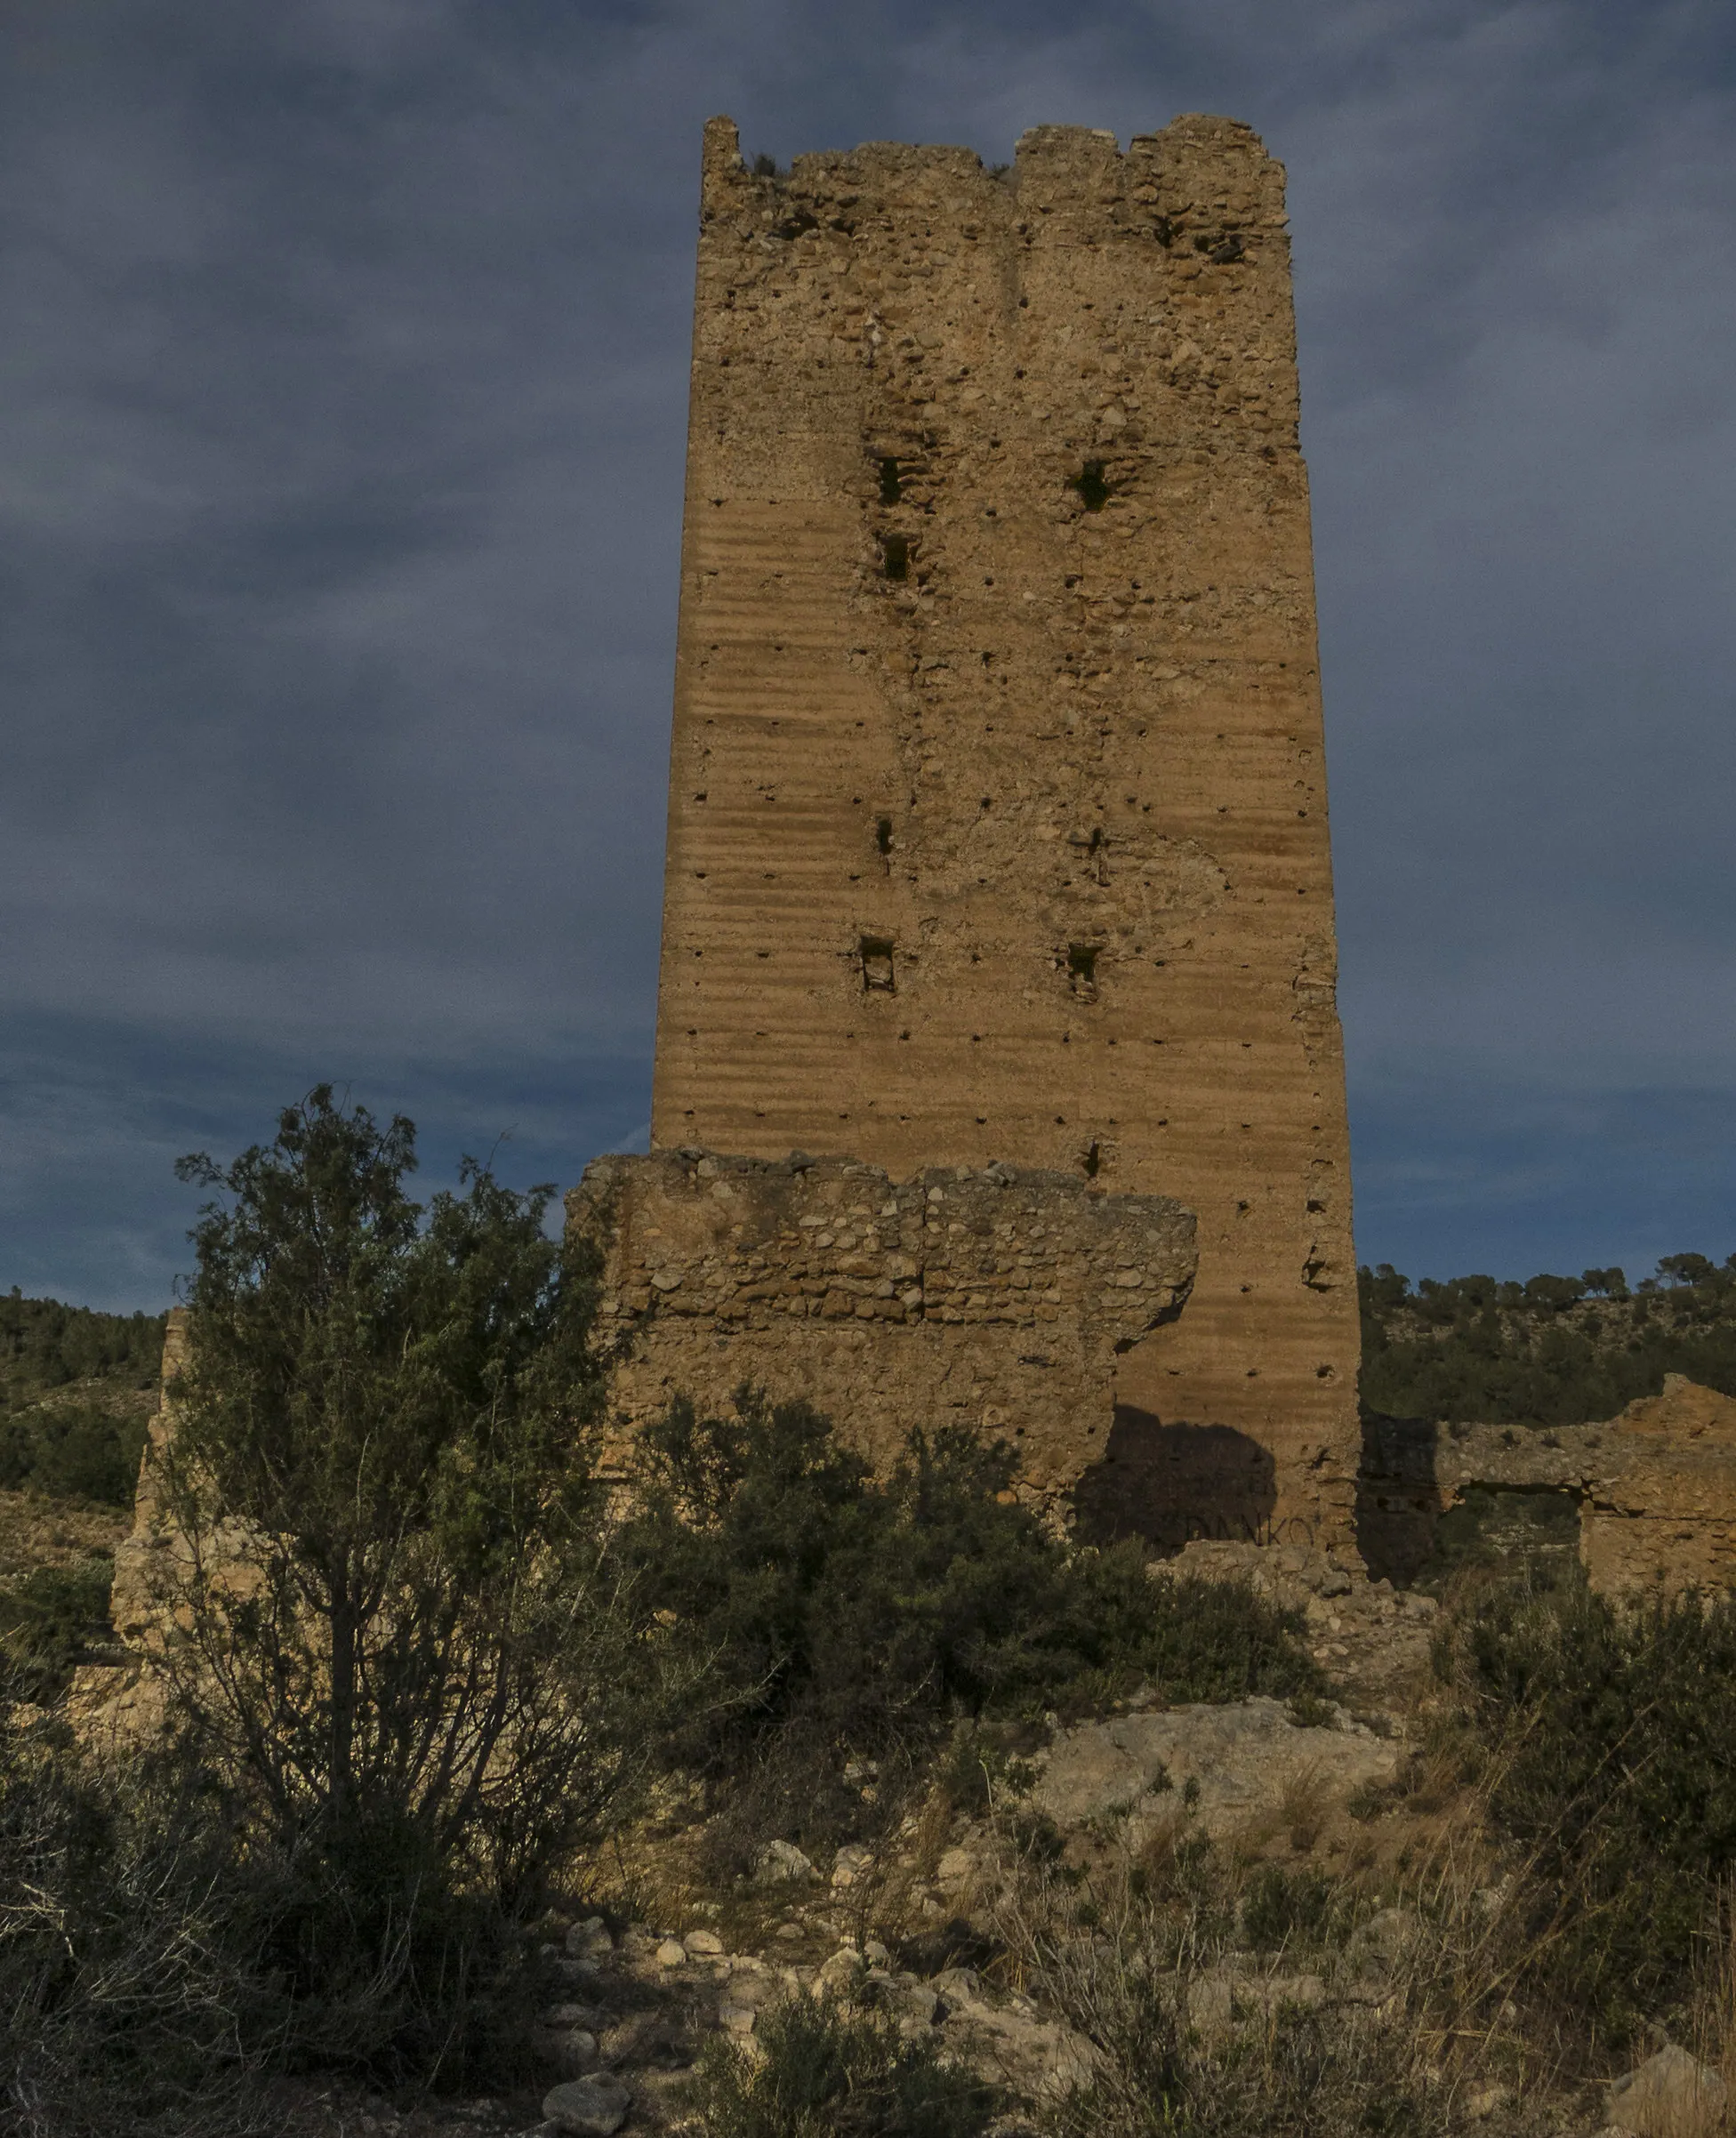 Photo showing: La torre del castell d'Alèdua, al terme municipal de Llombai, a la Ribera Alta (País Valencià), és la torre de la plaça fortificada islàmica d'Alèdua, construïda a finals del segle XII, situada sobre un turó al marge esquerre del riu Magre a uns 4 quilòmetres de la població, en el despoblat d'Alèdua.